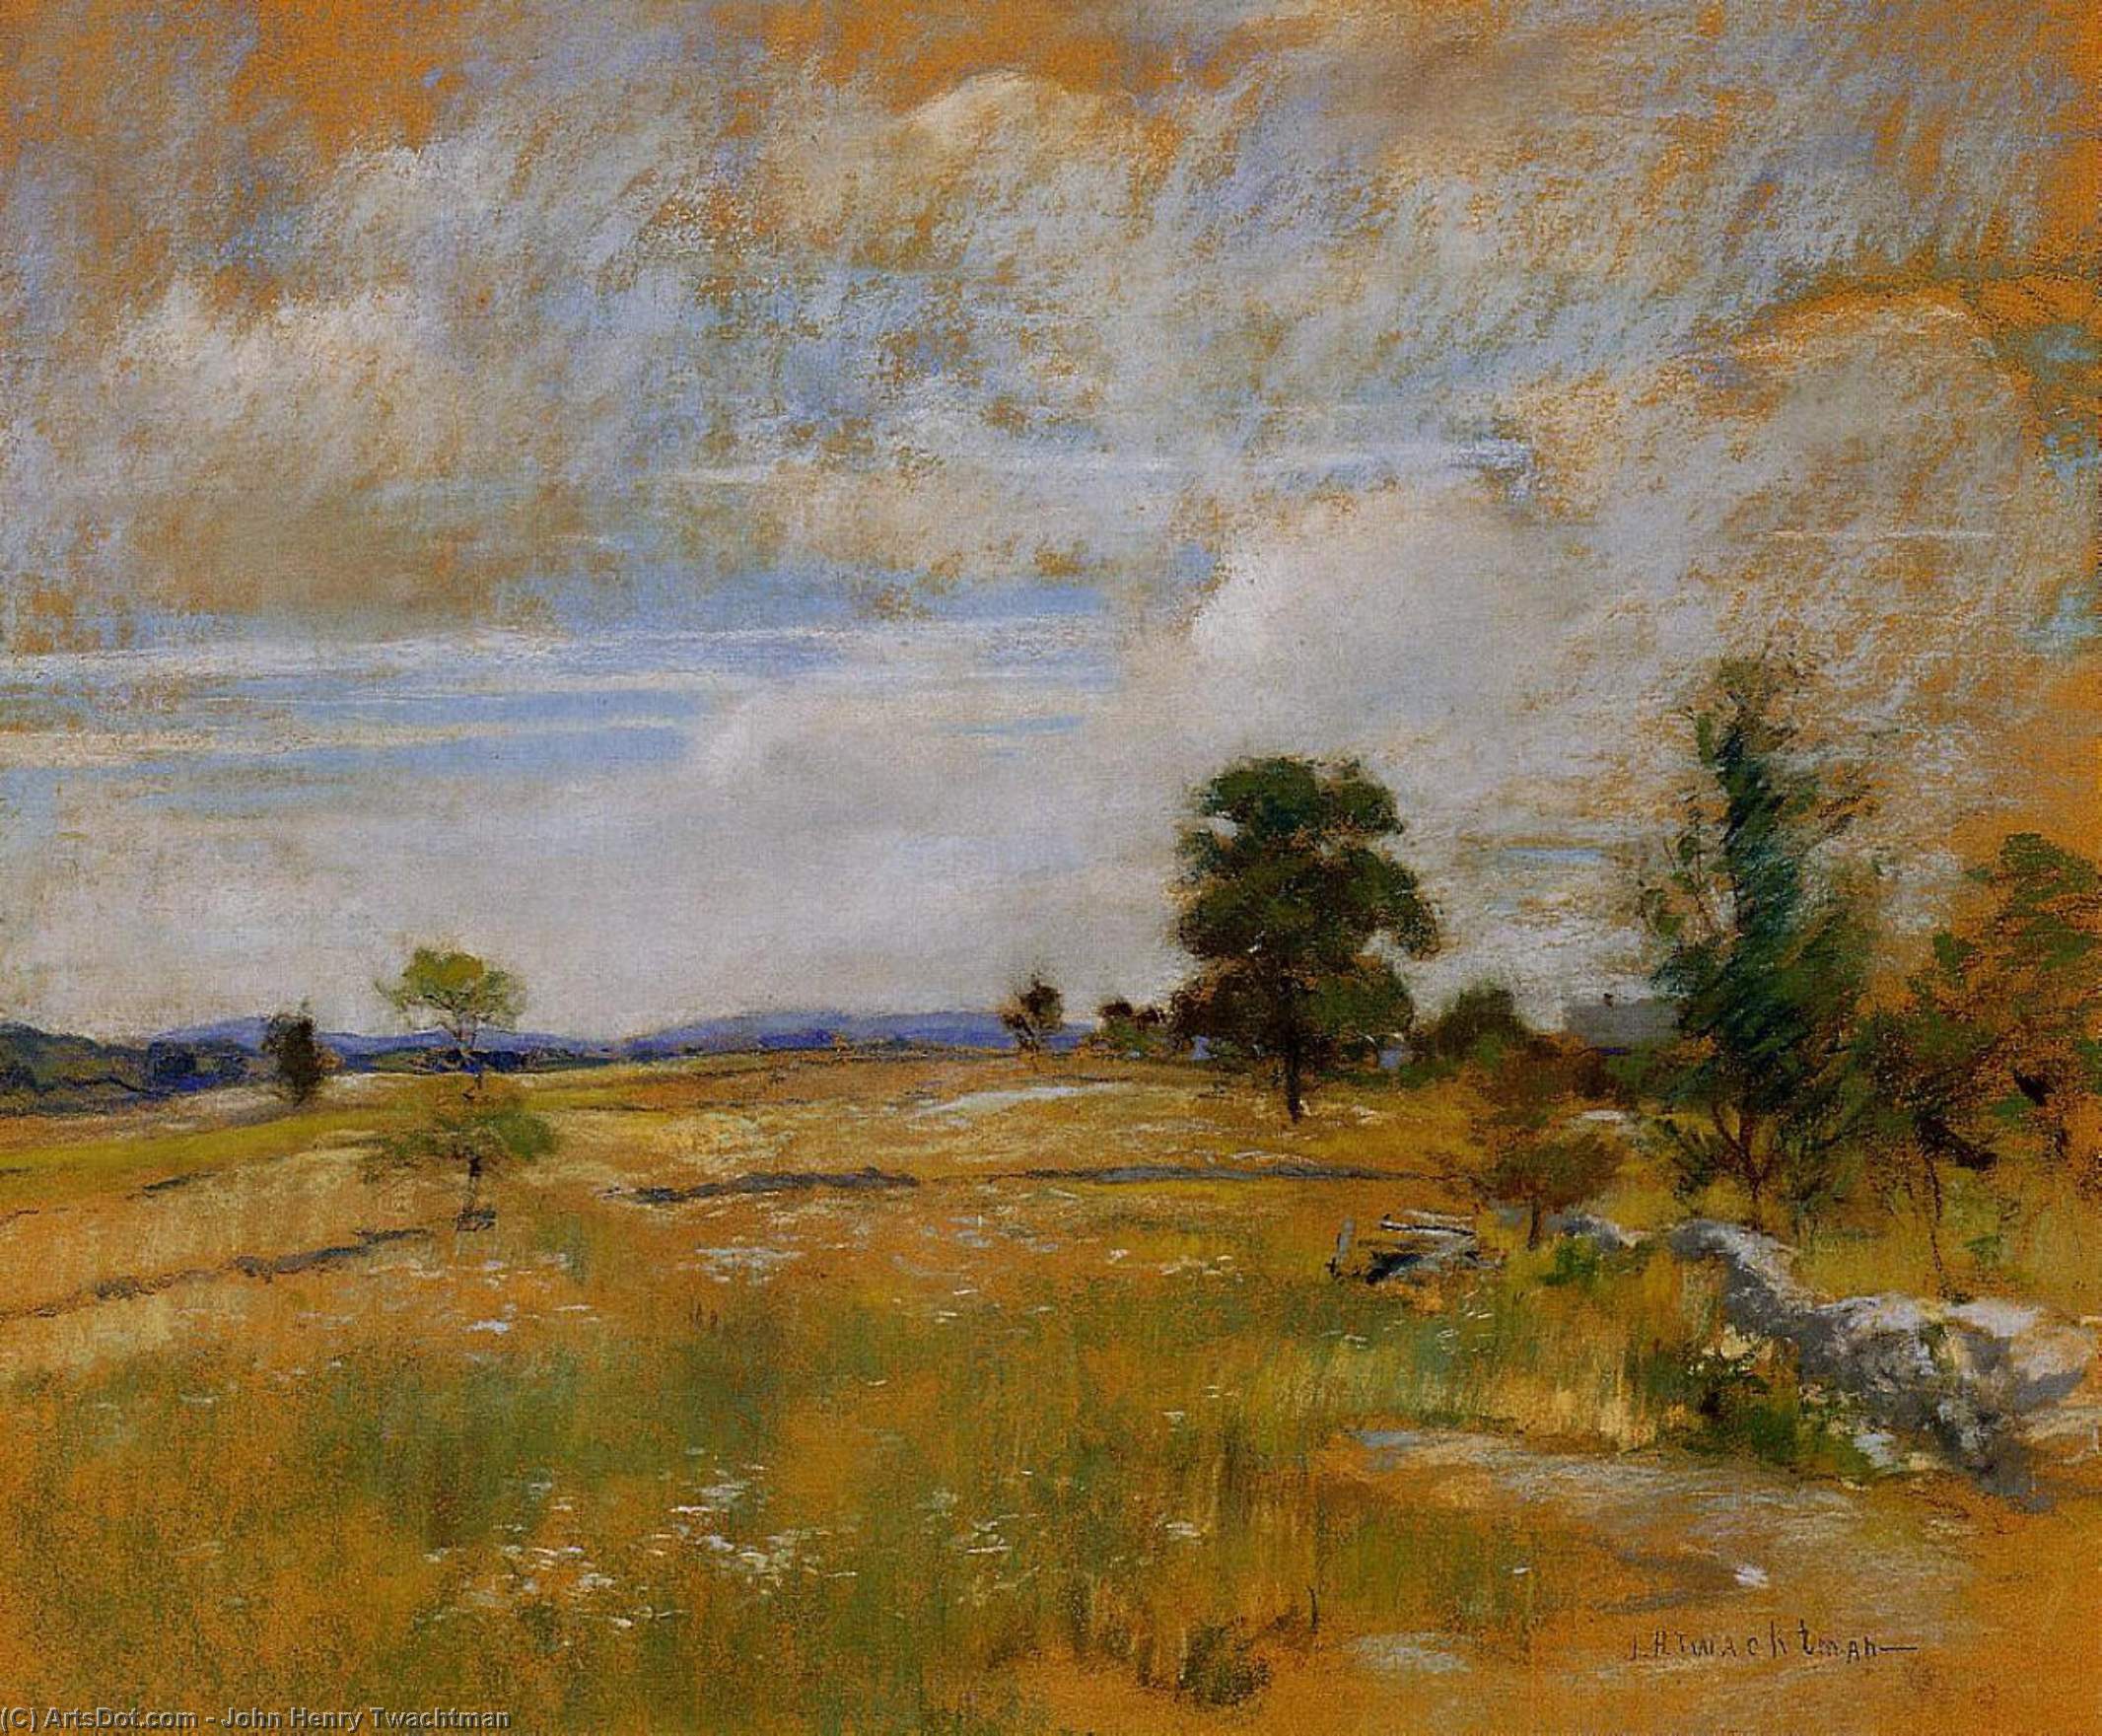 WikiOO.org - Encyclopedia of Fine Arts - Lukisan, Artwork John Henry Twachtman - Connecticut Landscape